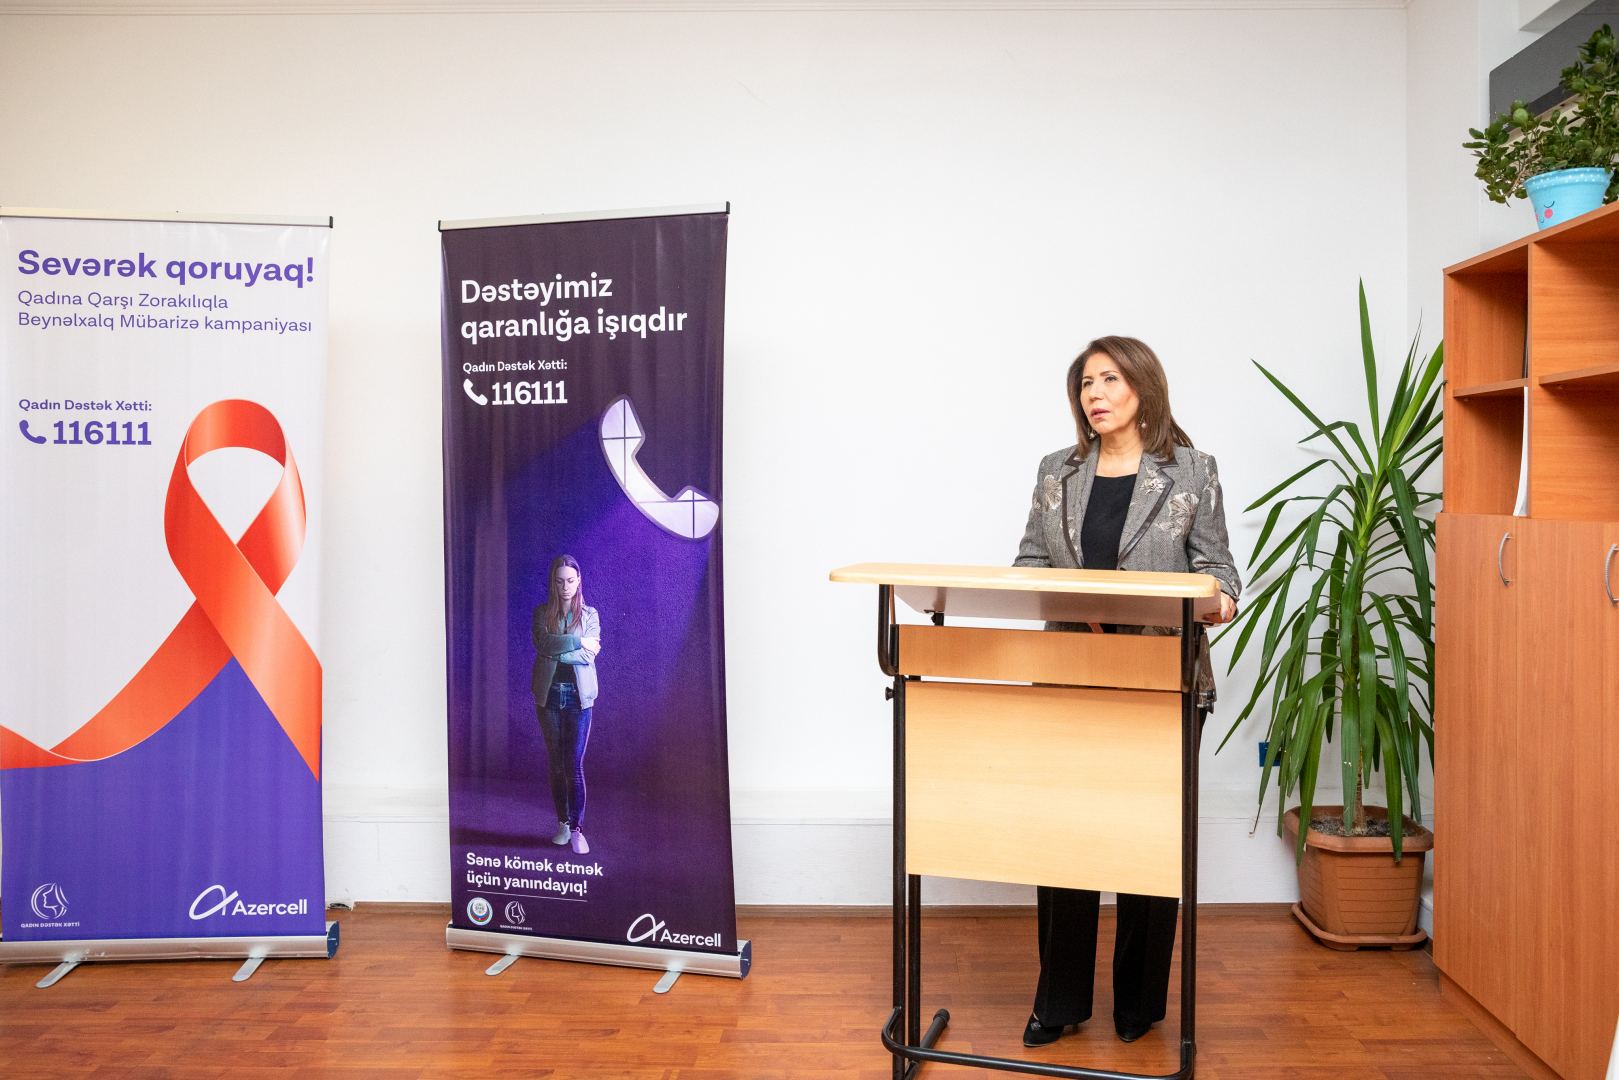 Состоялась официальная презентация проекта «Женская горячая линия», регулируемая при поддержке Azercell (ФОТО)